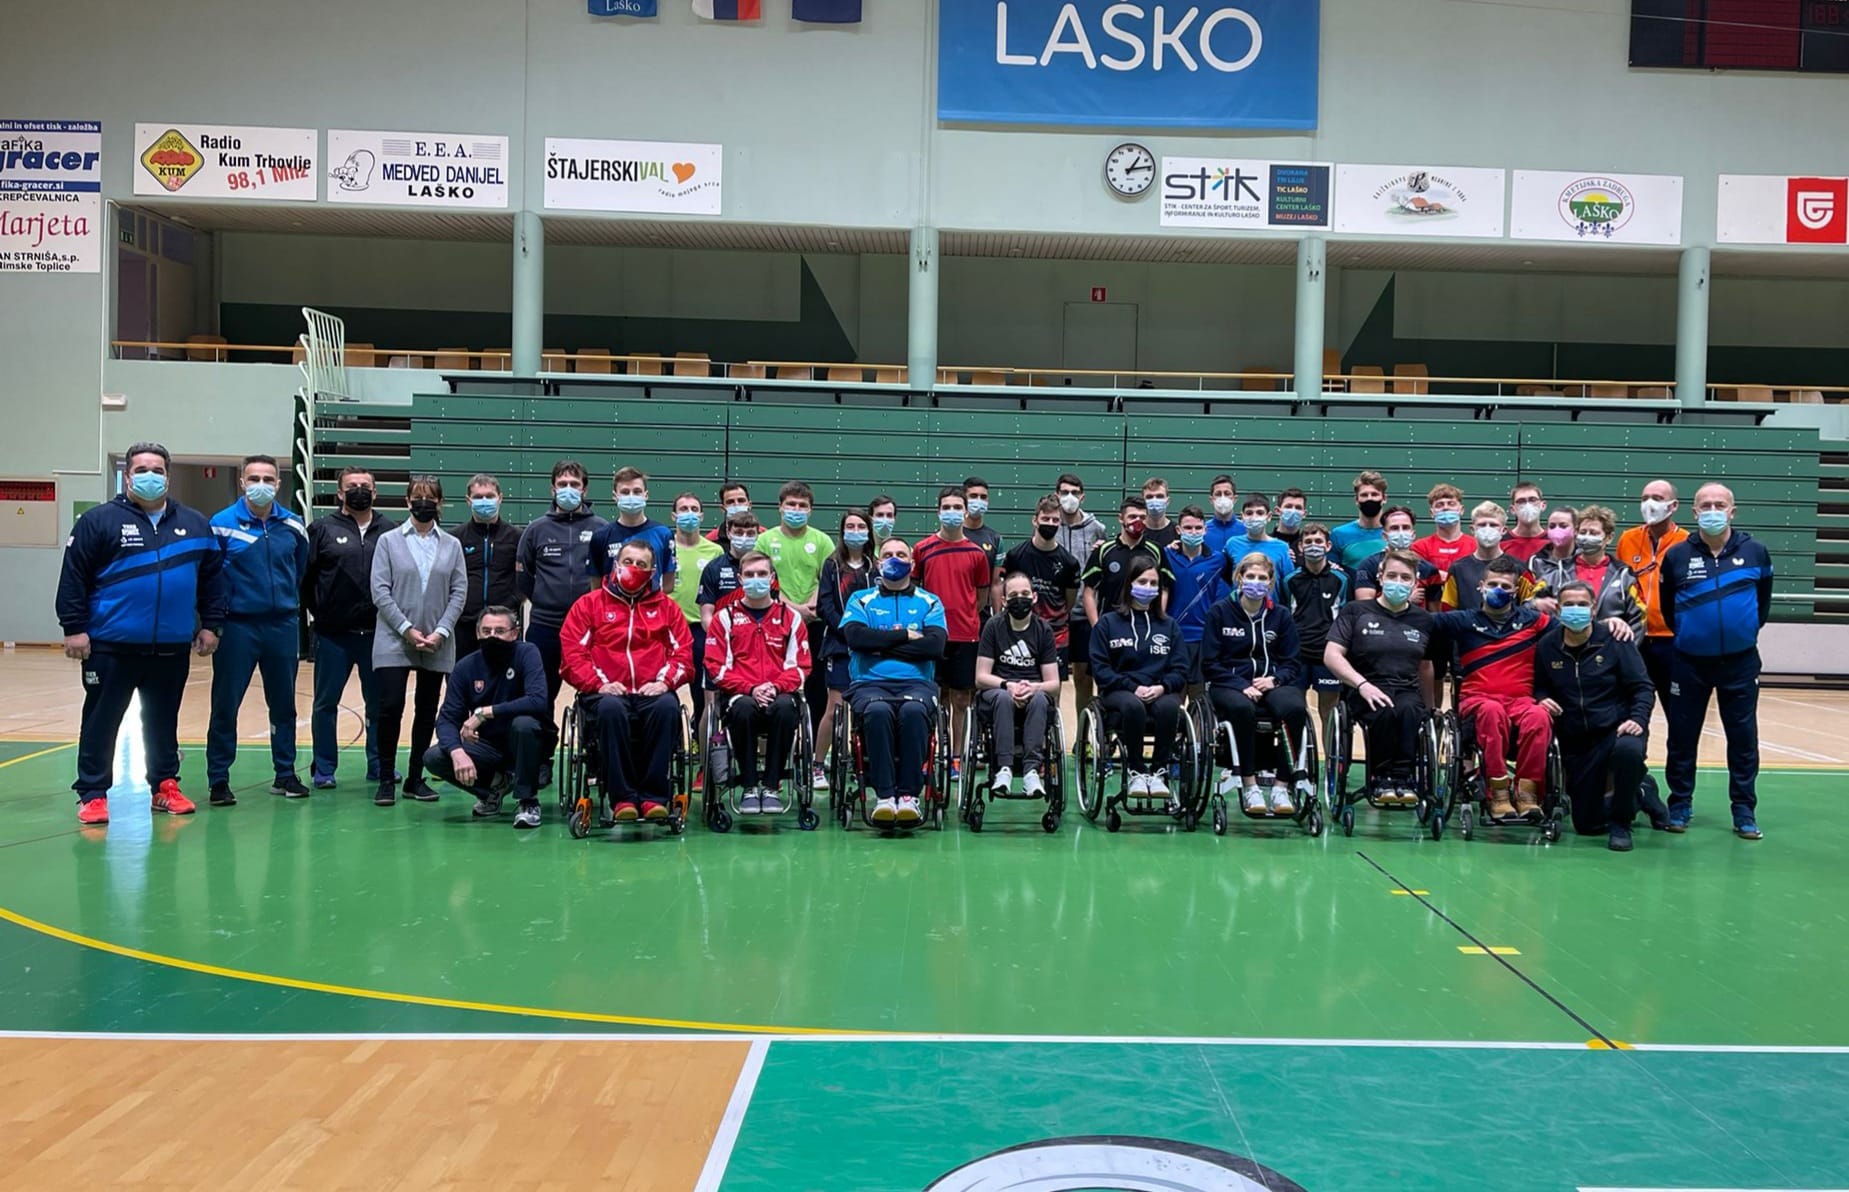 Camp paralimpico Under 23 di Lasko dicembre 2021